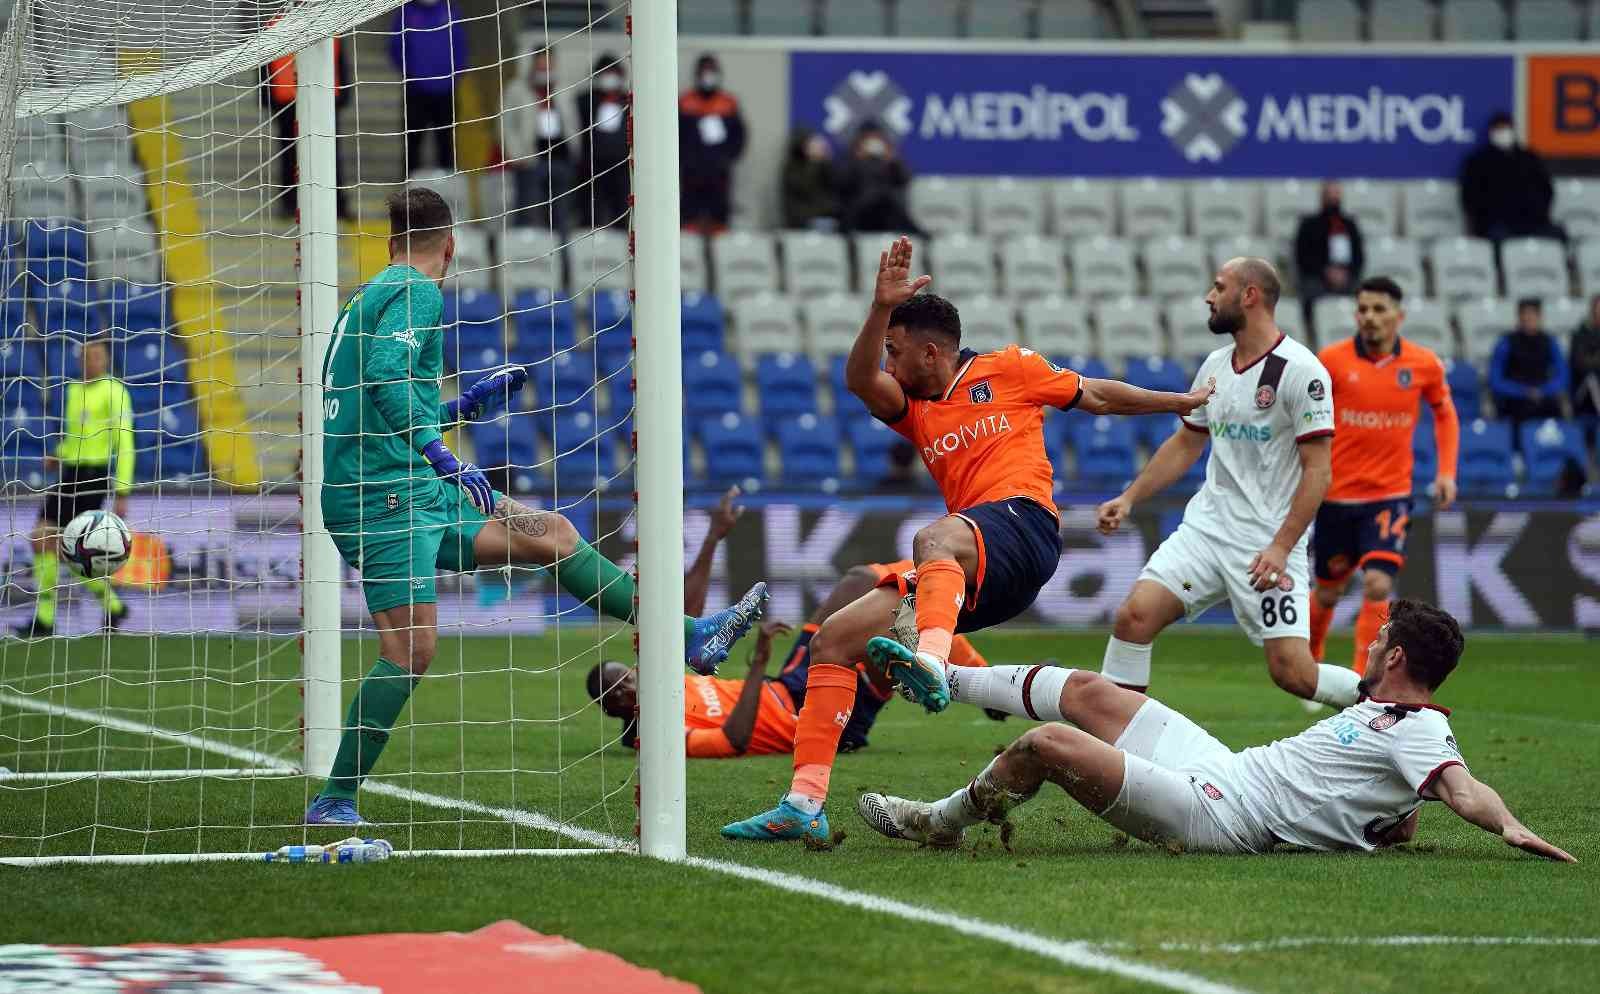 Trezeguet’ten 3 maçta 3 gol #istanbul